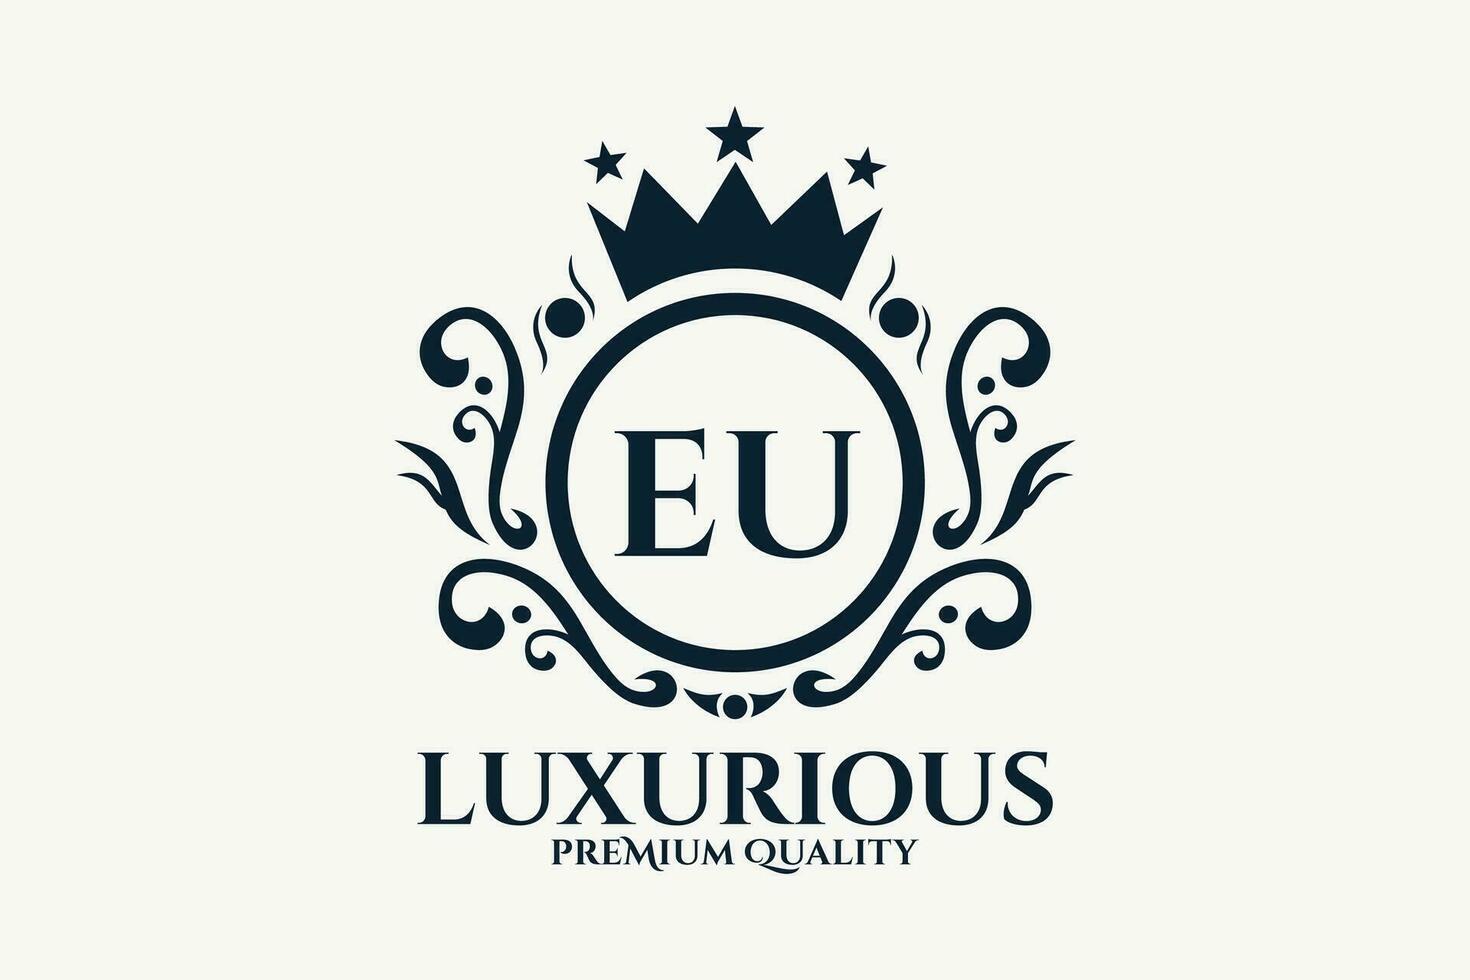 initiale lettre UE Royal luxe logo modèle dans vecteur art pour luxueux l'image de marque vecteur illustration.